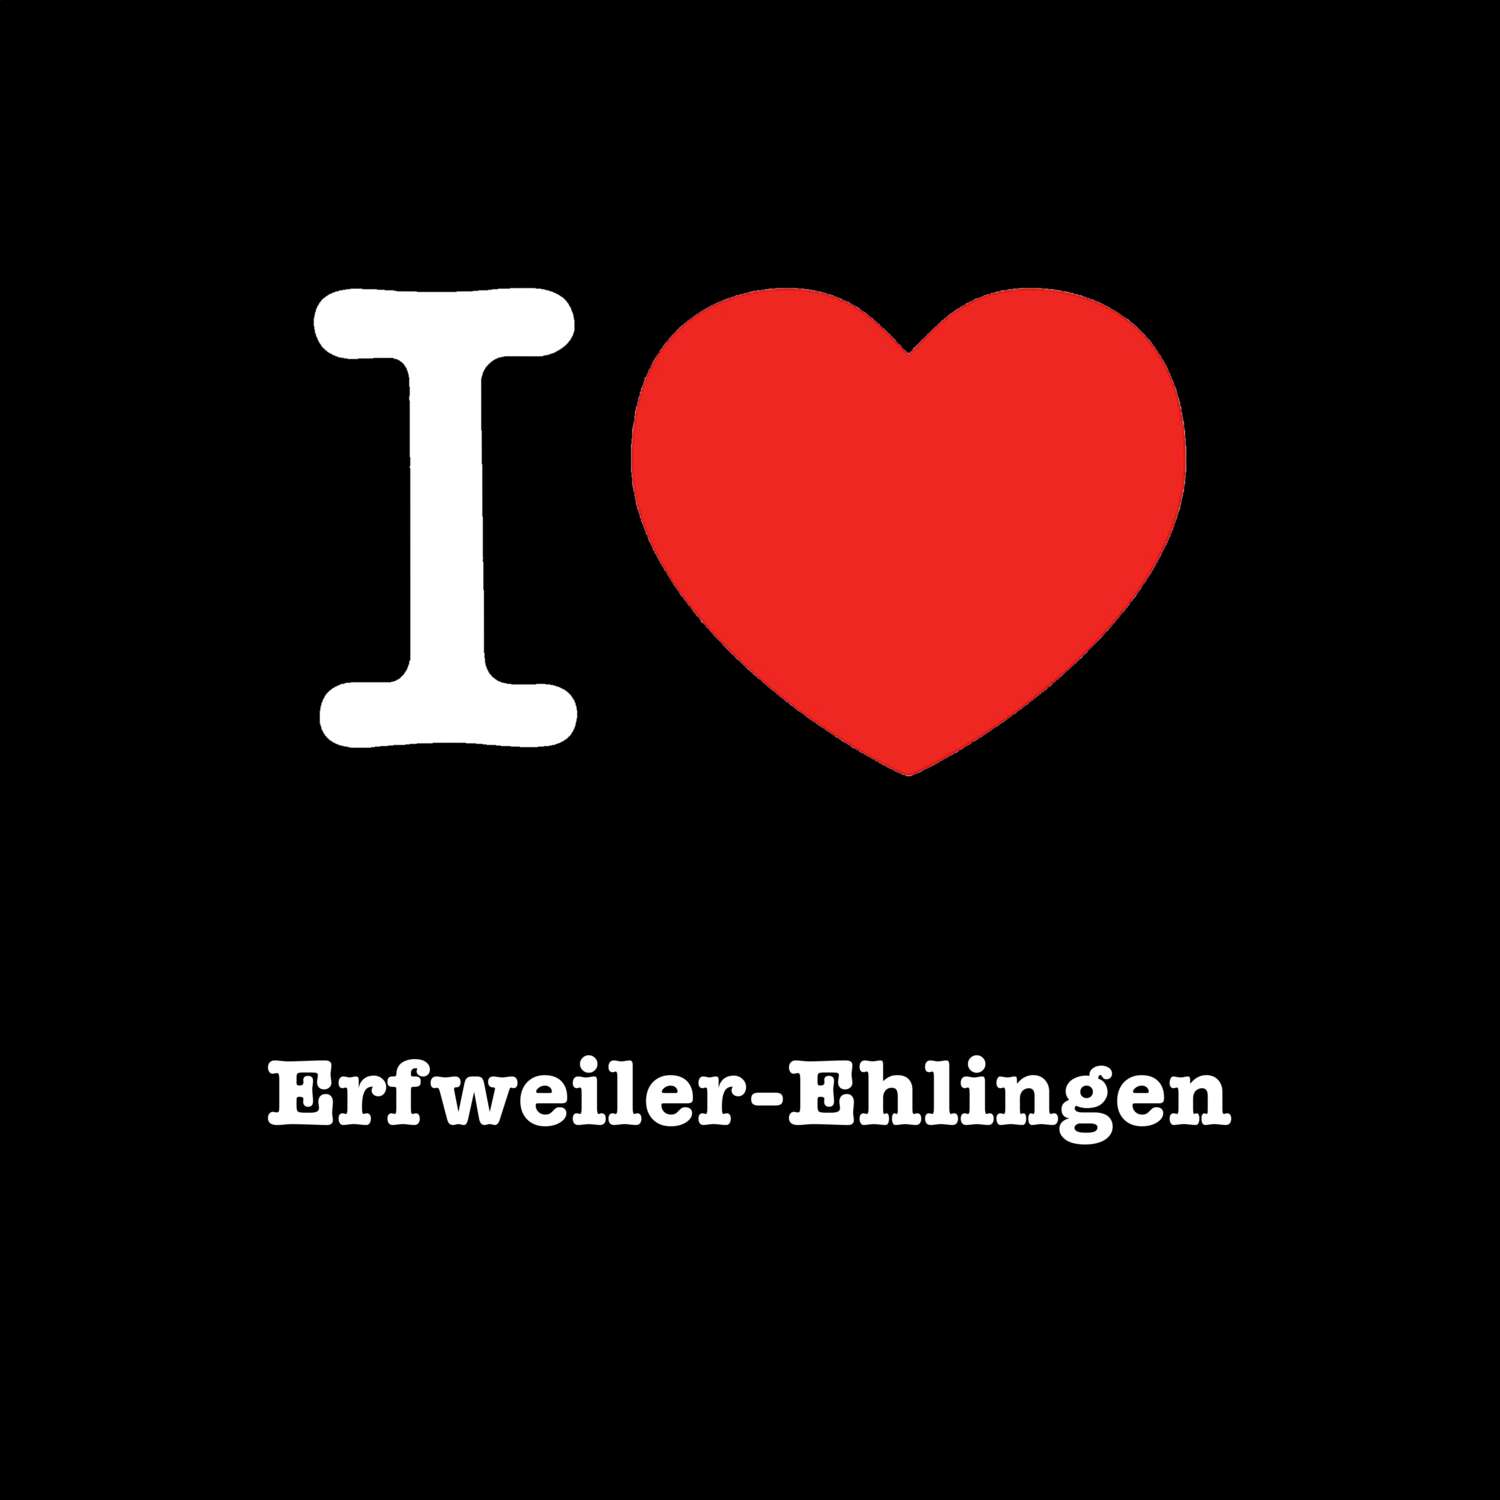 Erfweiler-Ehlingen T-Shirt »I love«